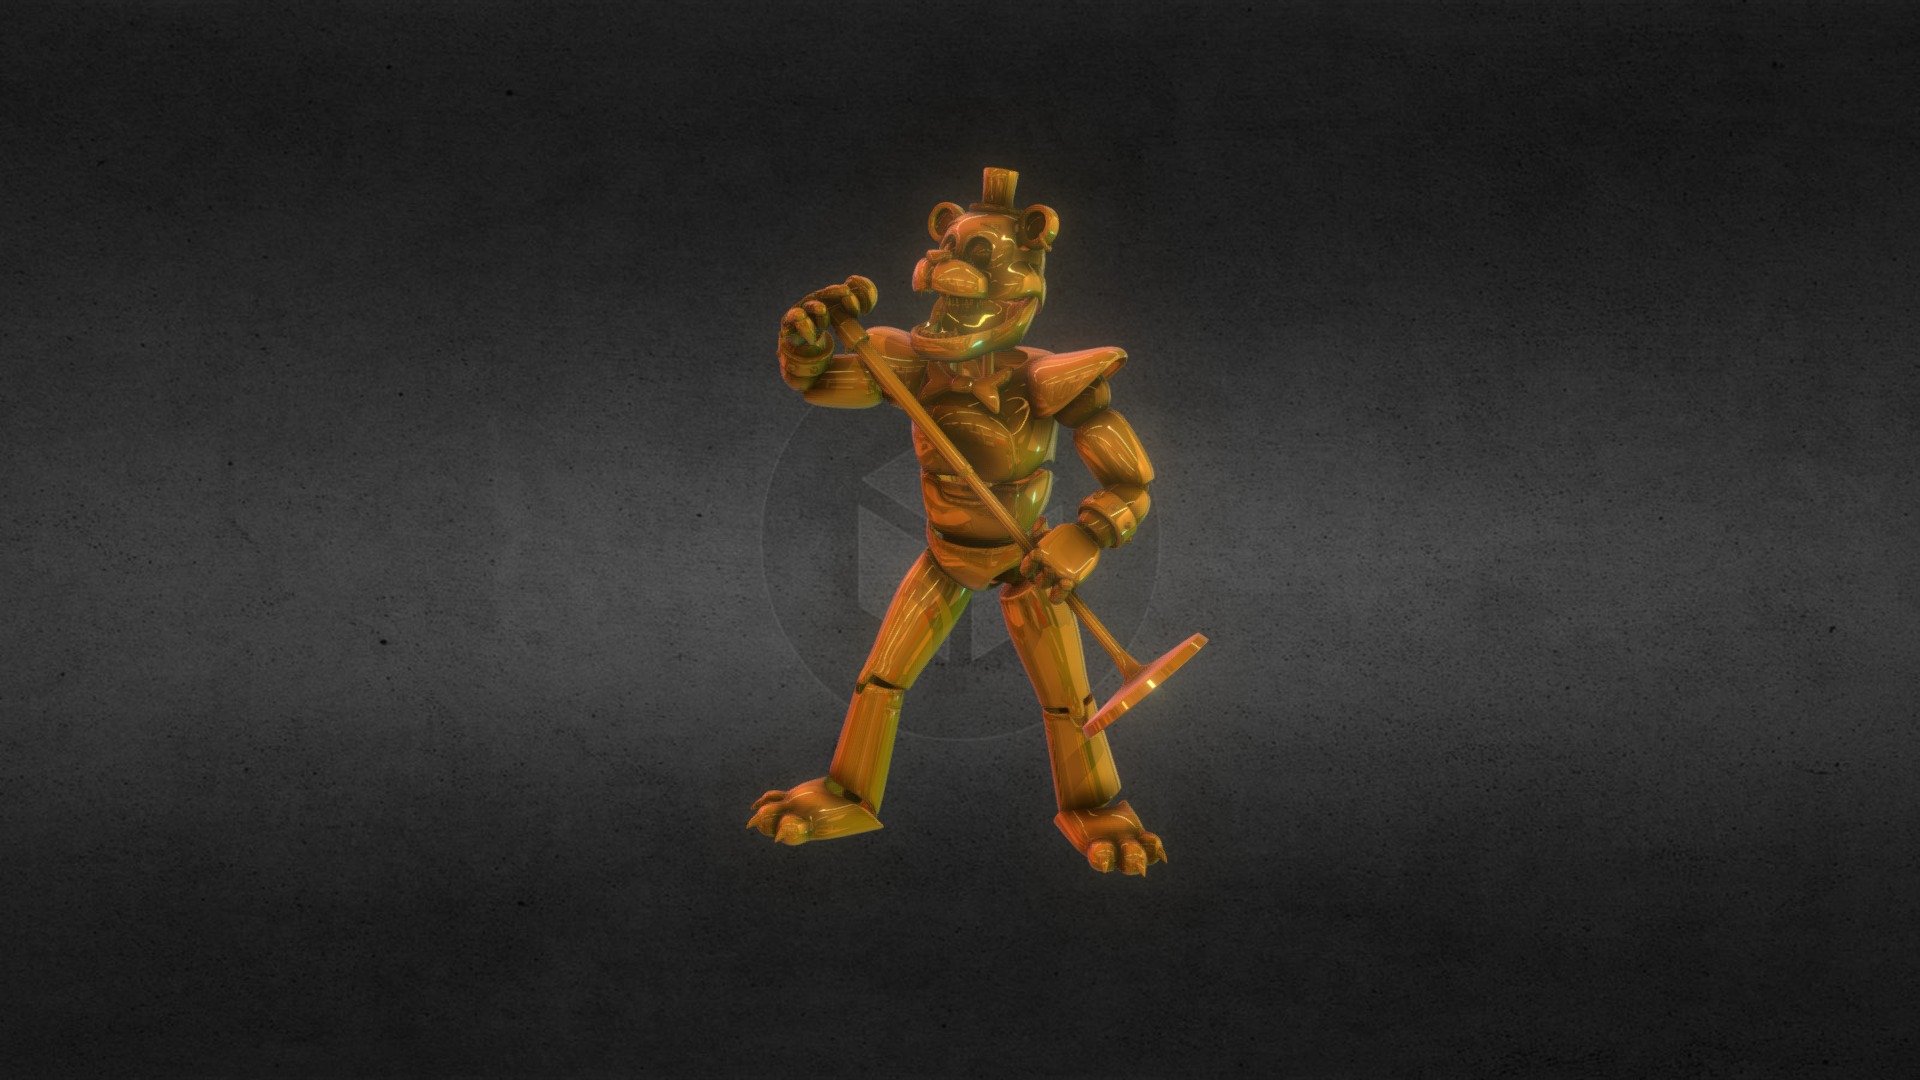 Rockstar Freddy - Download Free 3D model by MrSpringMen